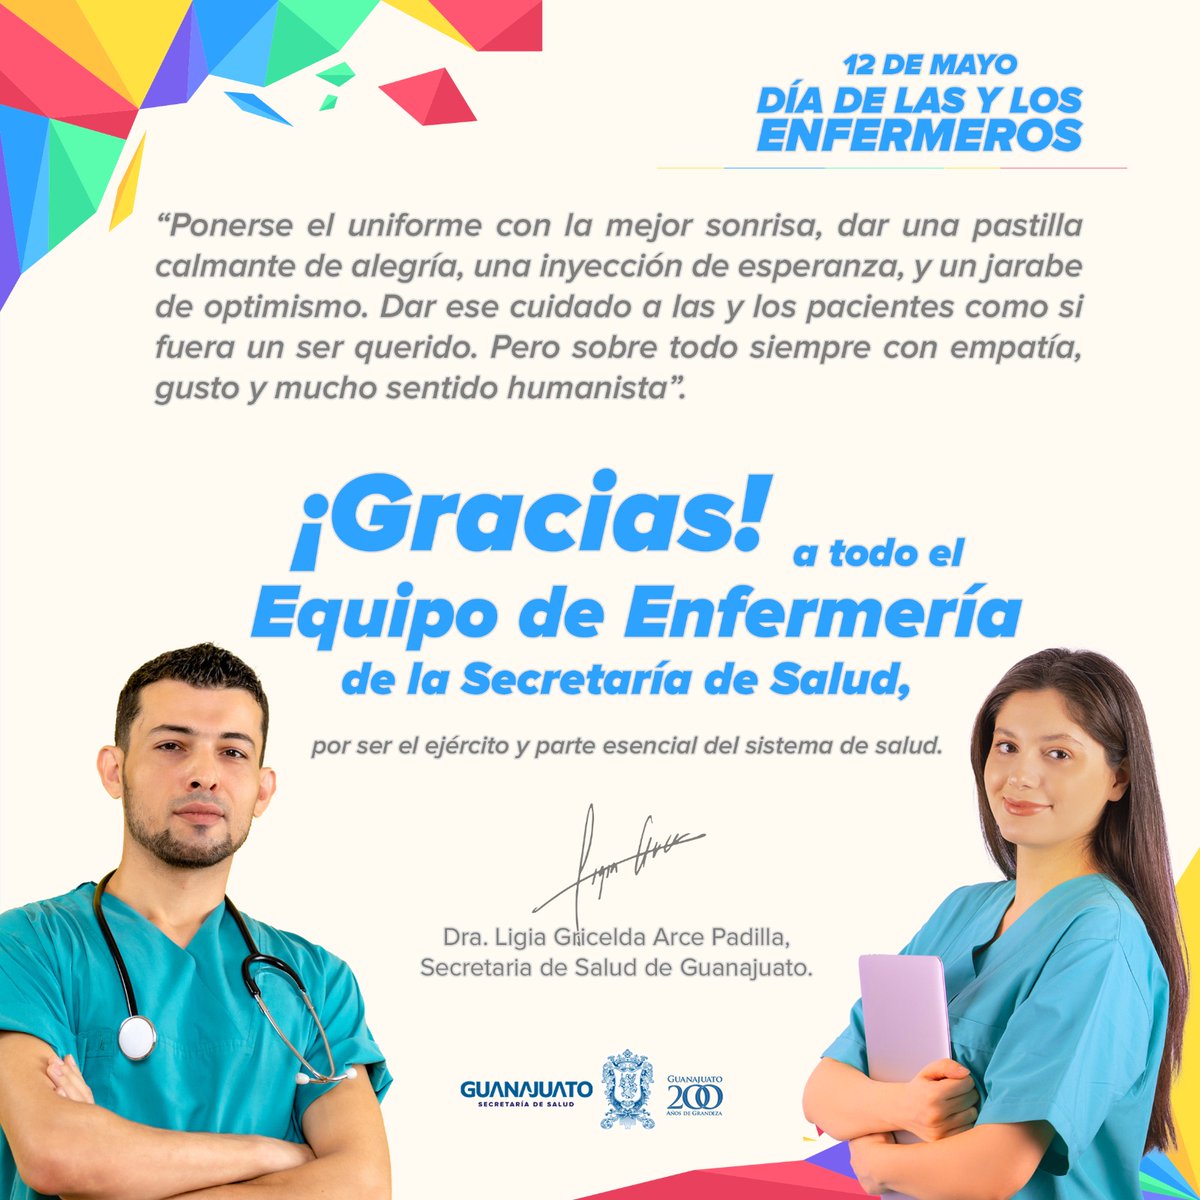 El trabajo y aporte de las enfermeras y enfermeros de nuestro #Guanajuato es importante para el Sistema de Salud.